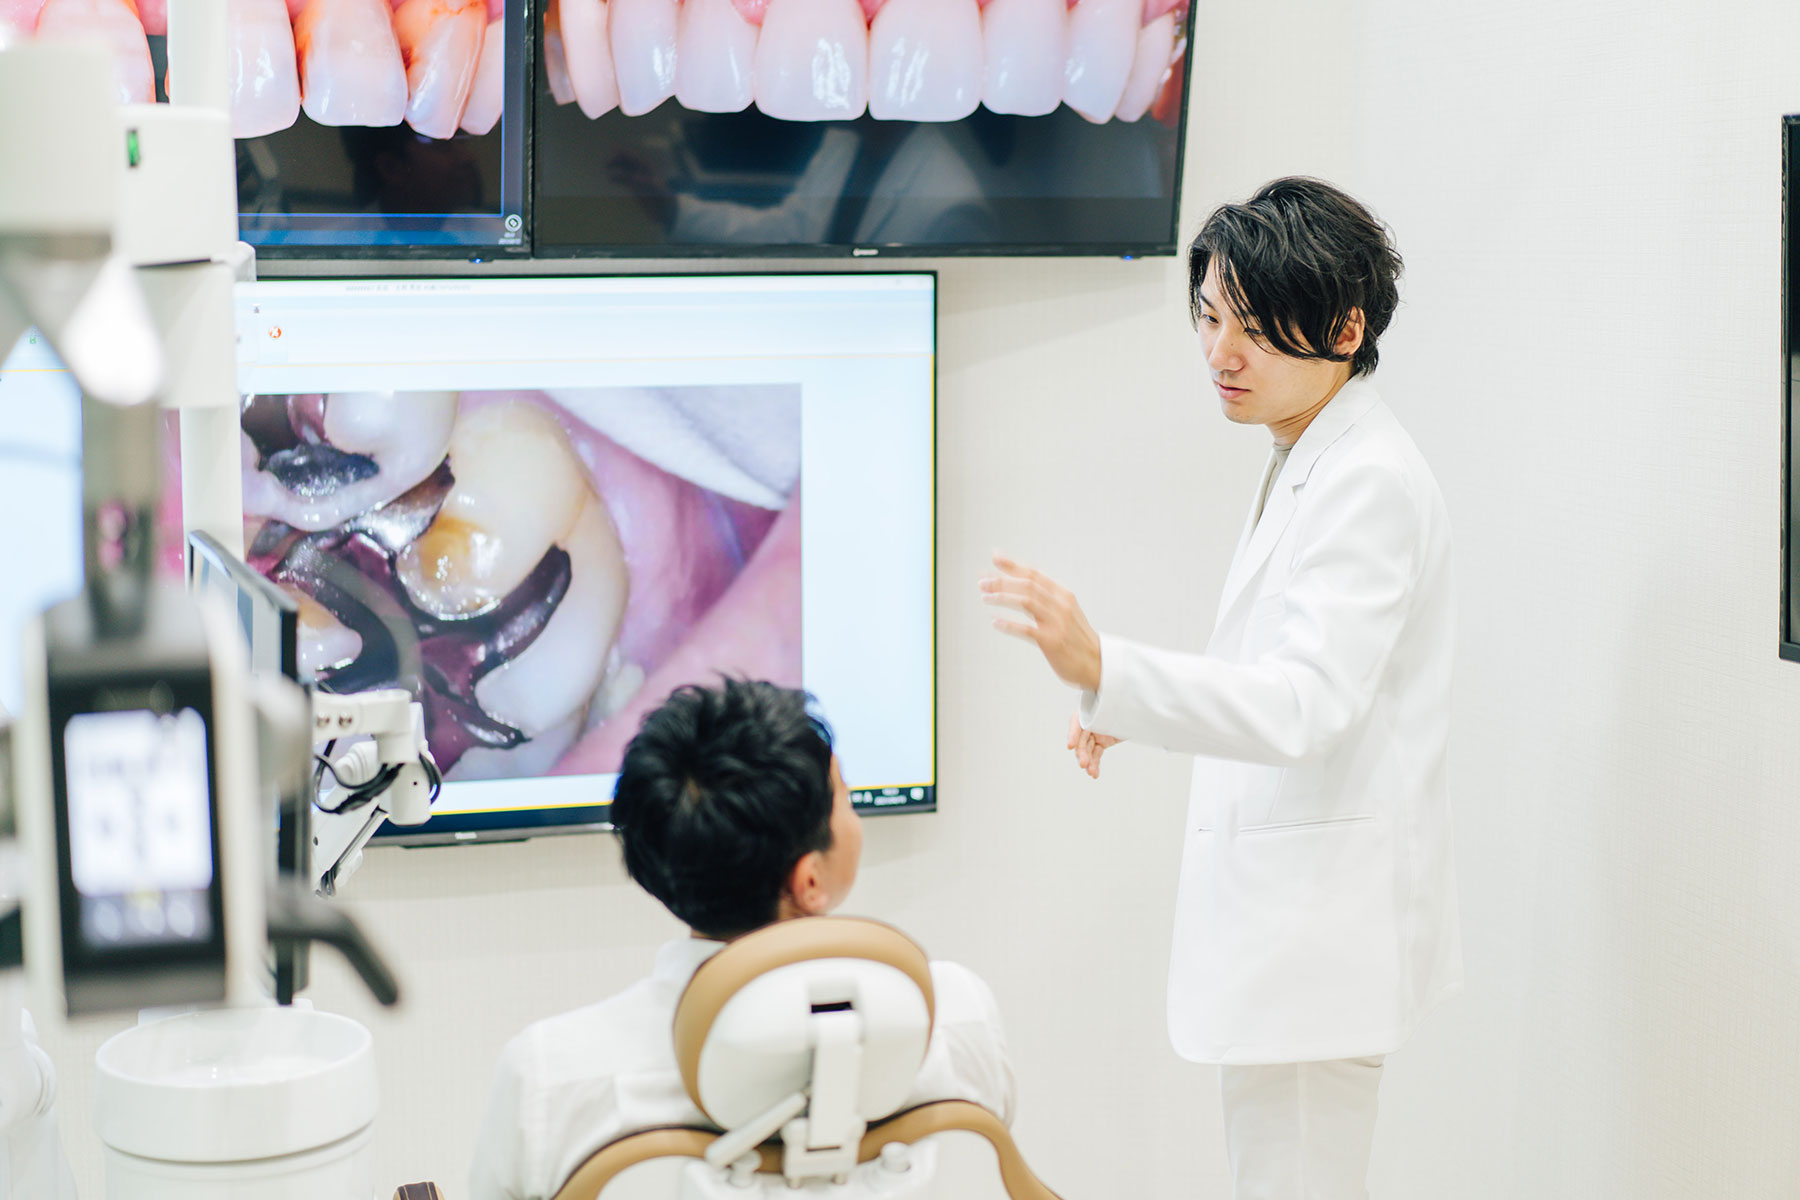 渋谷の歯医者 渋谷マロン歯科Tokyoの大きな画像を使用した治療説明